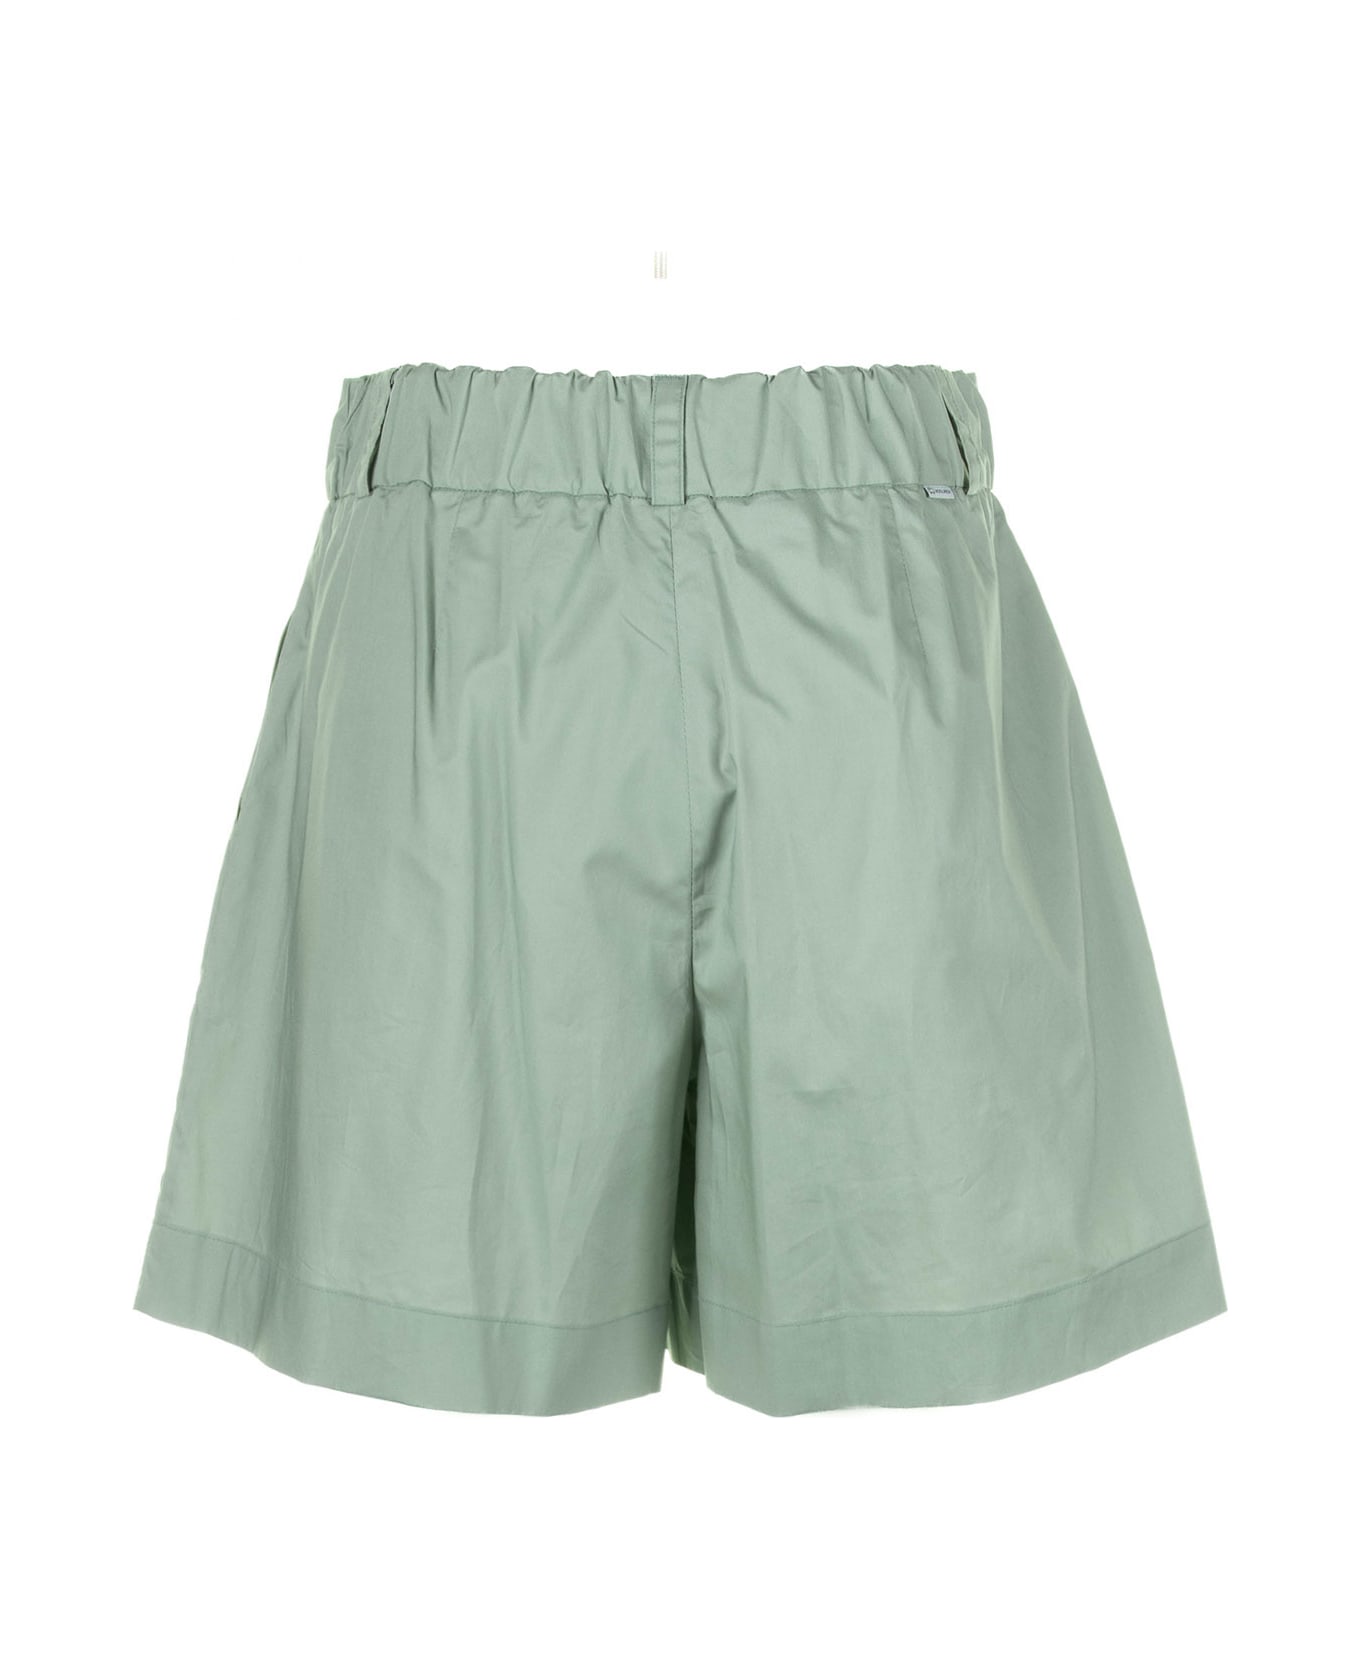 Woolrich Sage Green Cotton Shorts - SAGE